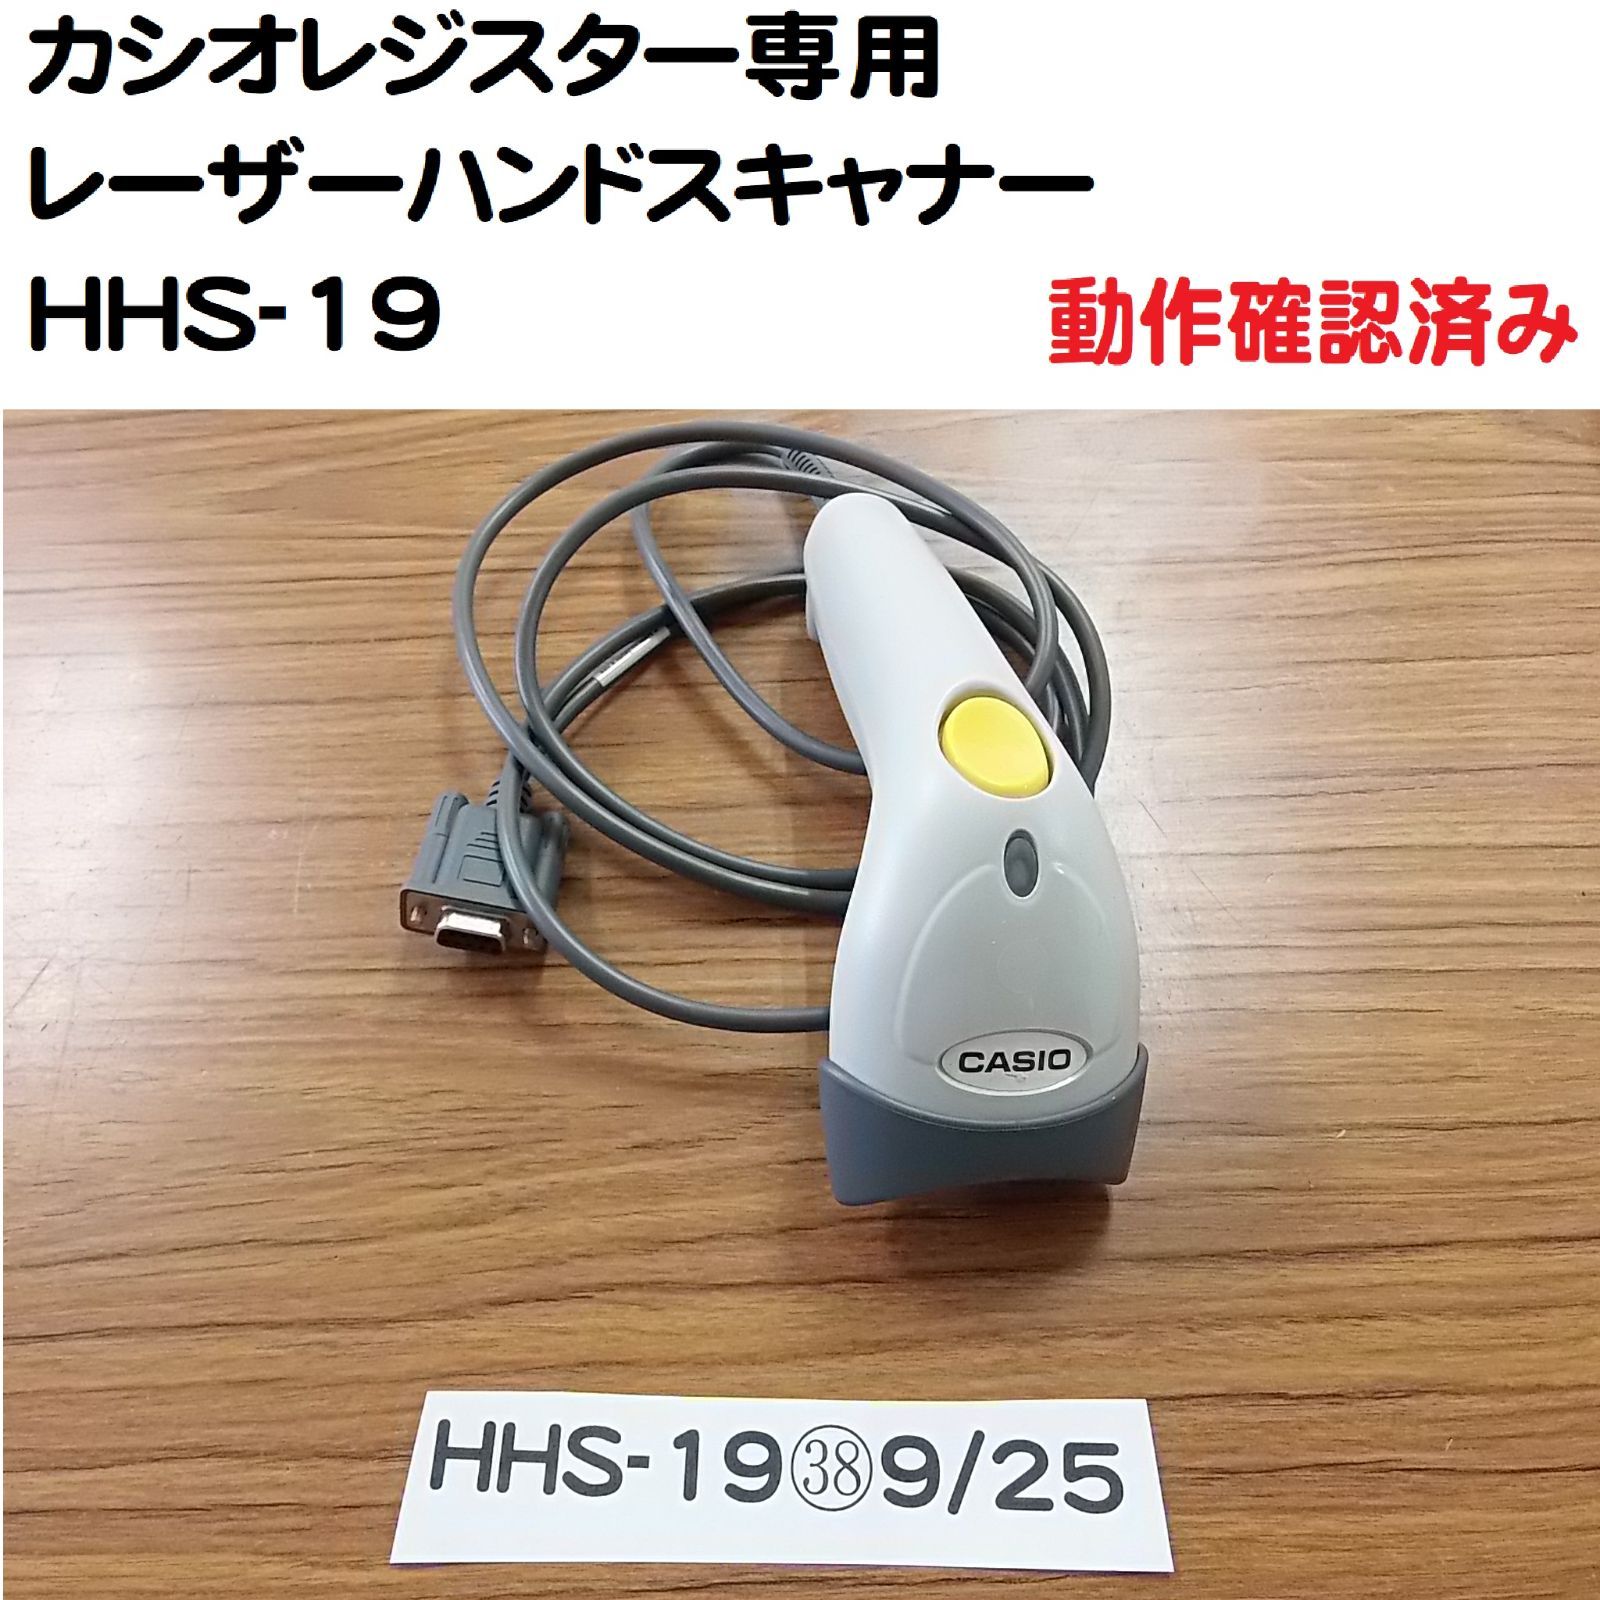 カシオ レジ用 ハンドスキャナー HHS-19 グレー-